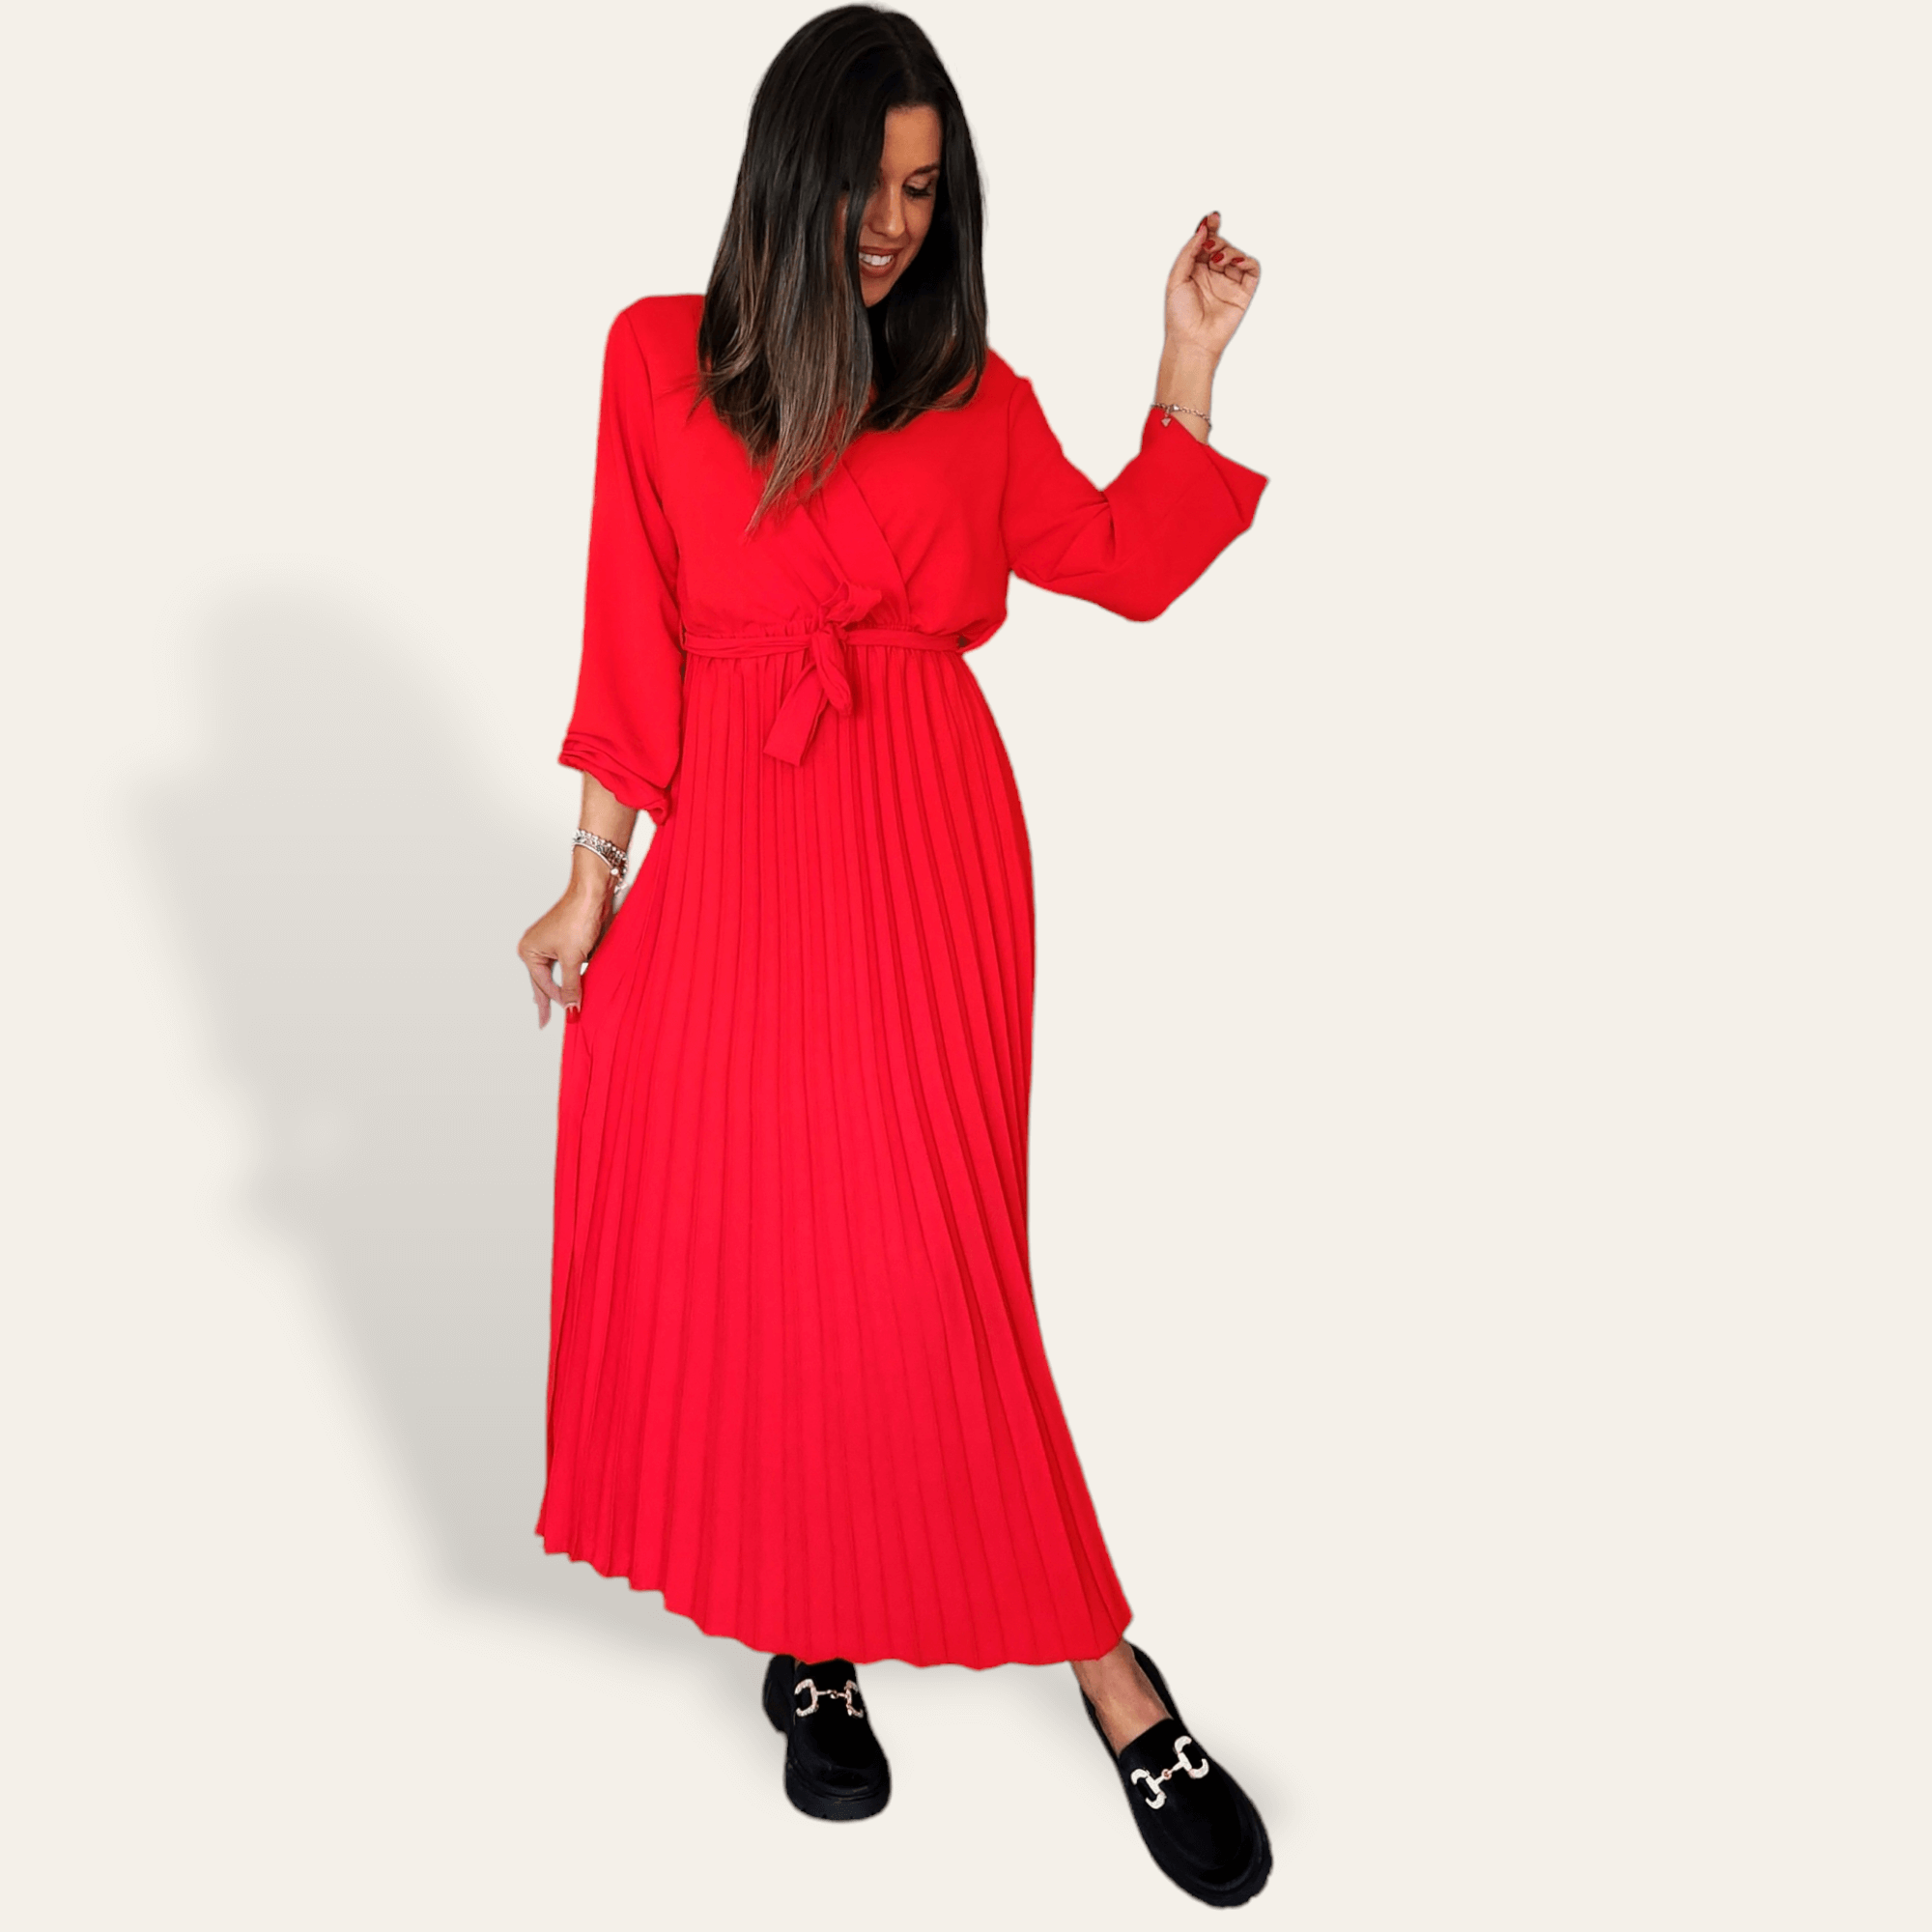 Red Selene dress